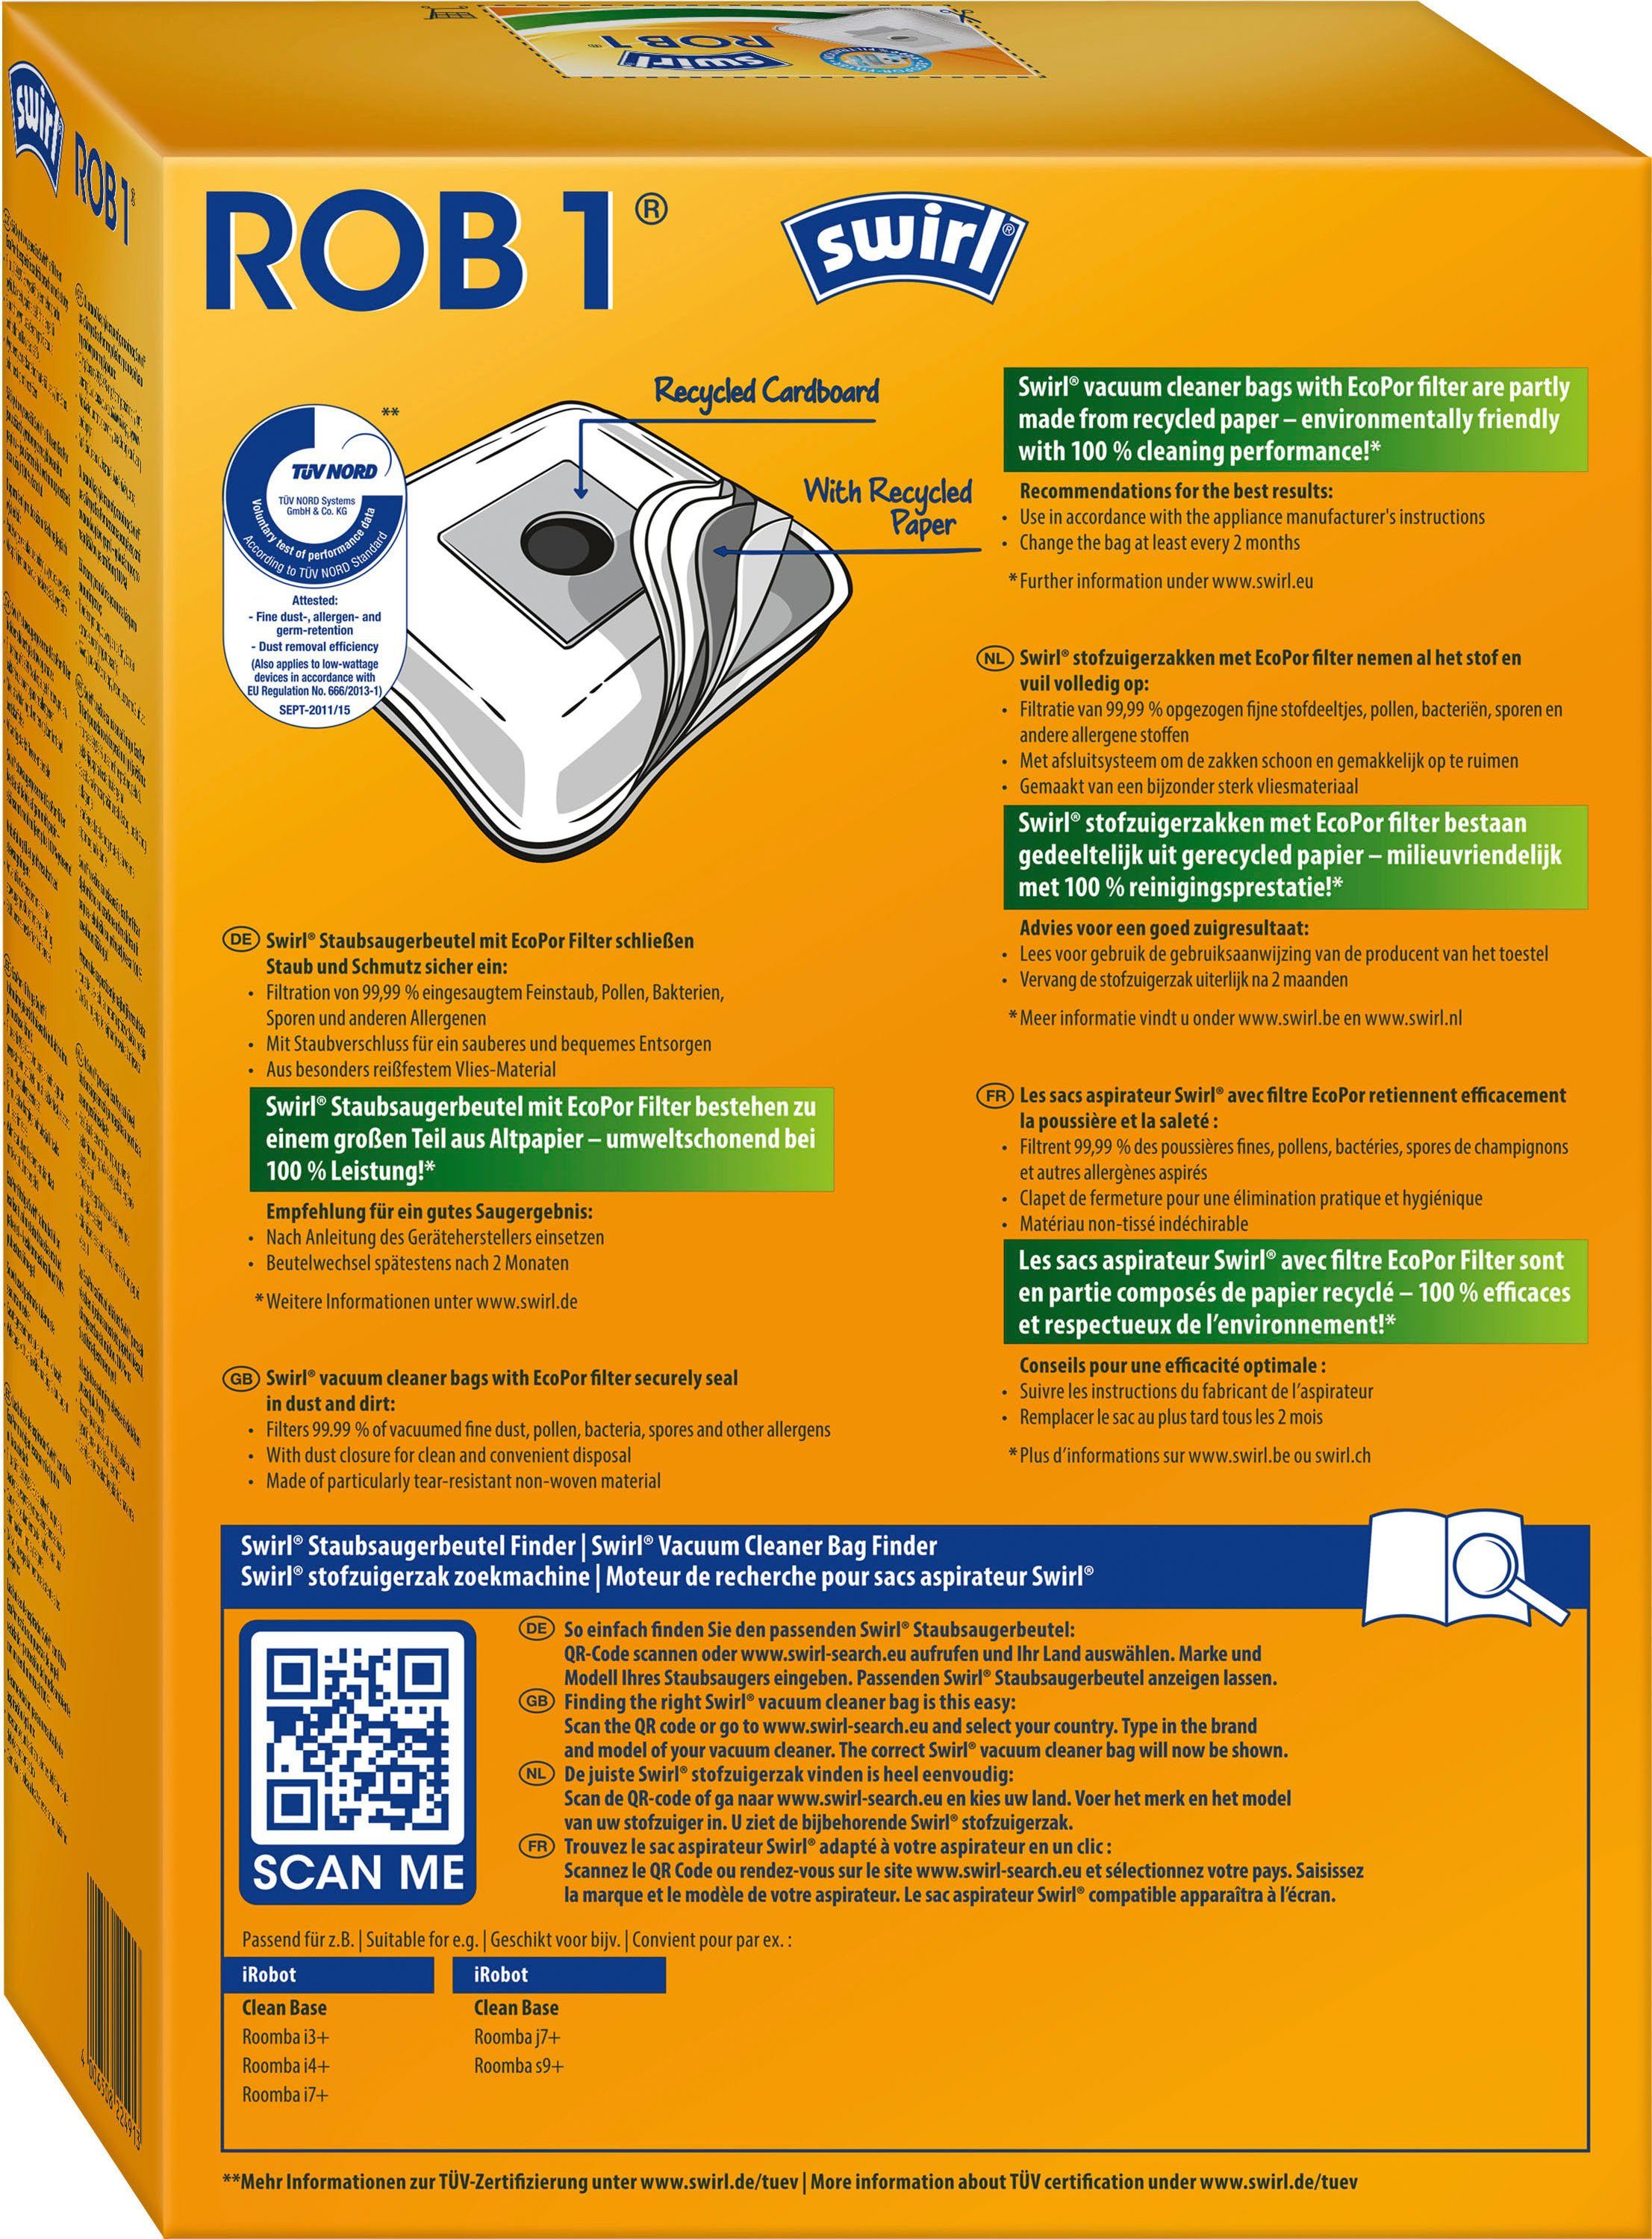 Swirl Staubsaugerbeutel 1®, Automatische Base Absaugstation, für 4er-Pack ROB Clean iRobot